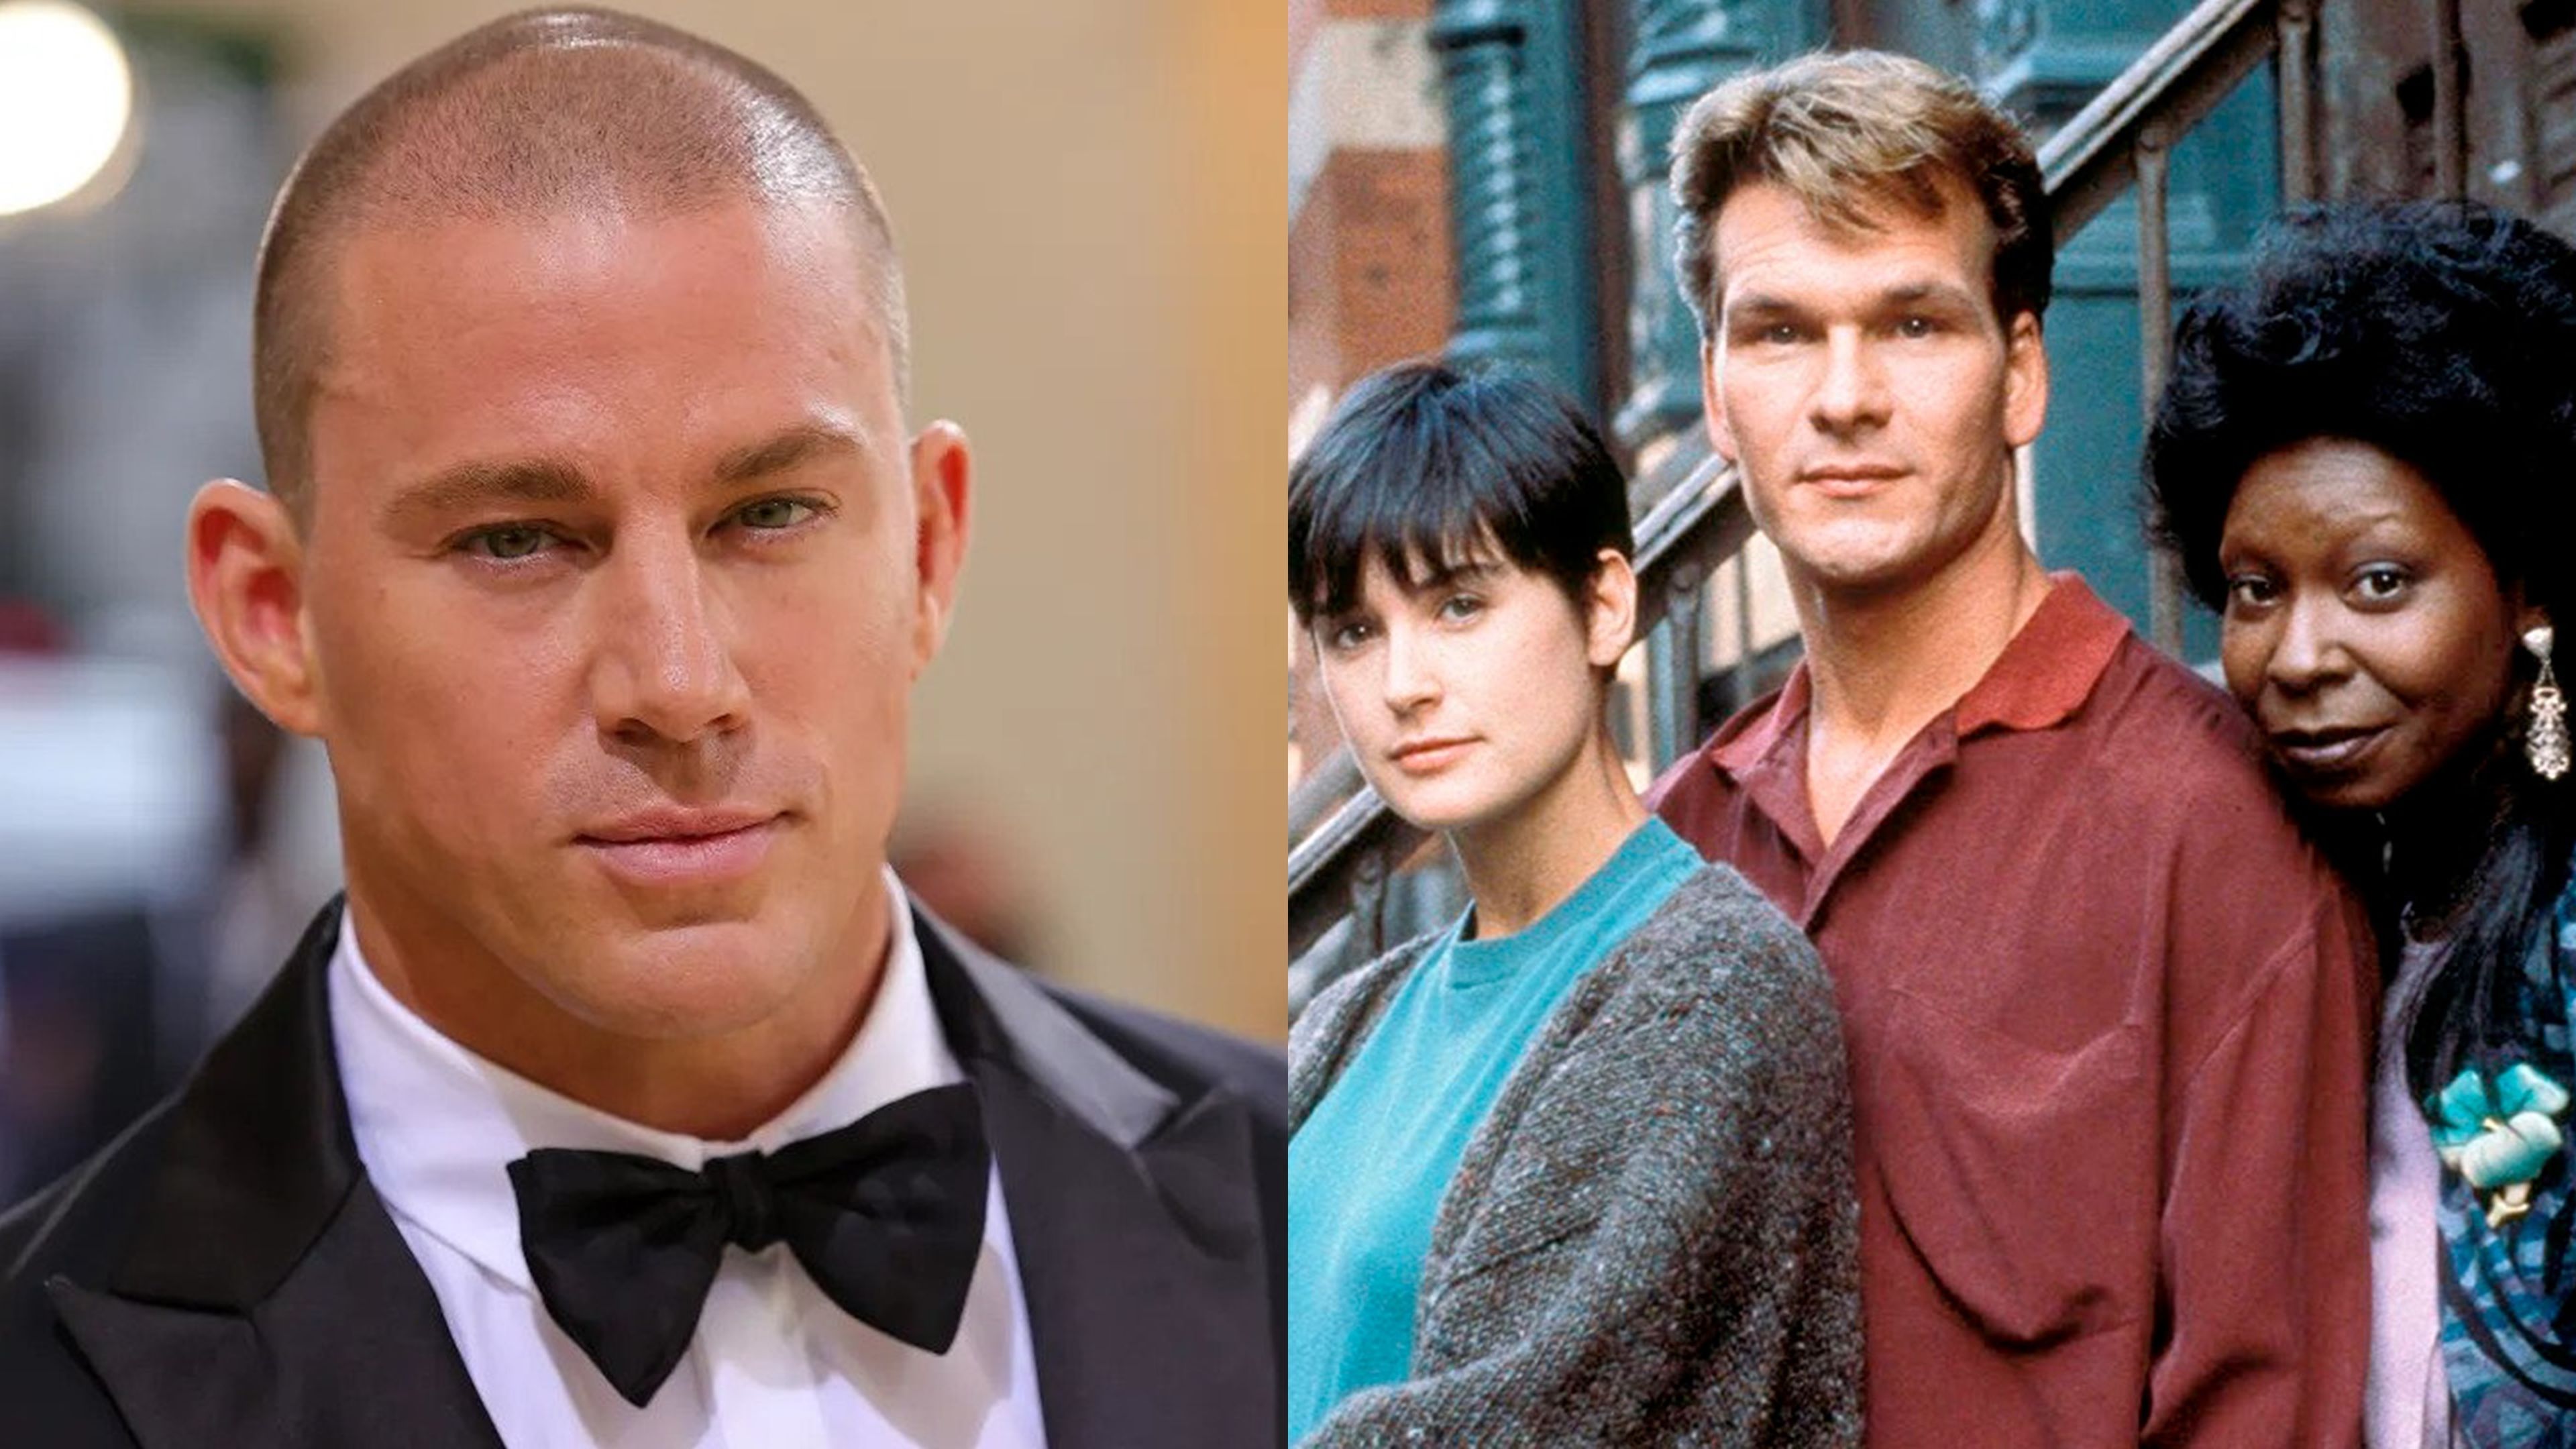 Channing Tatum protagonizará un remake de Ghost, la icónica película romántica de los 90